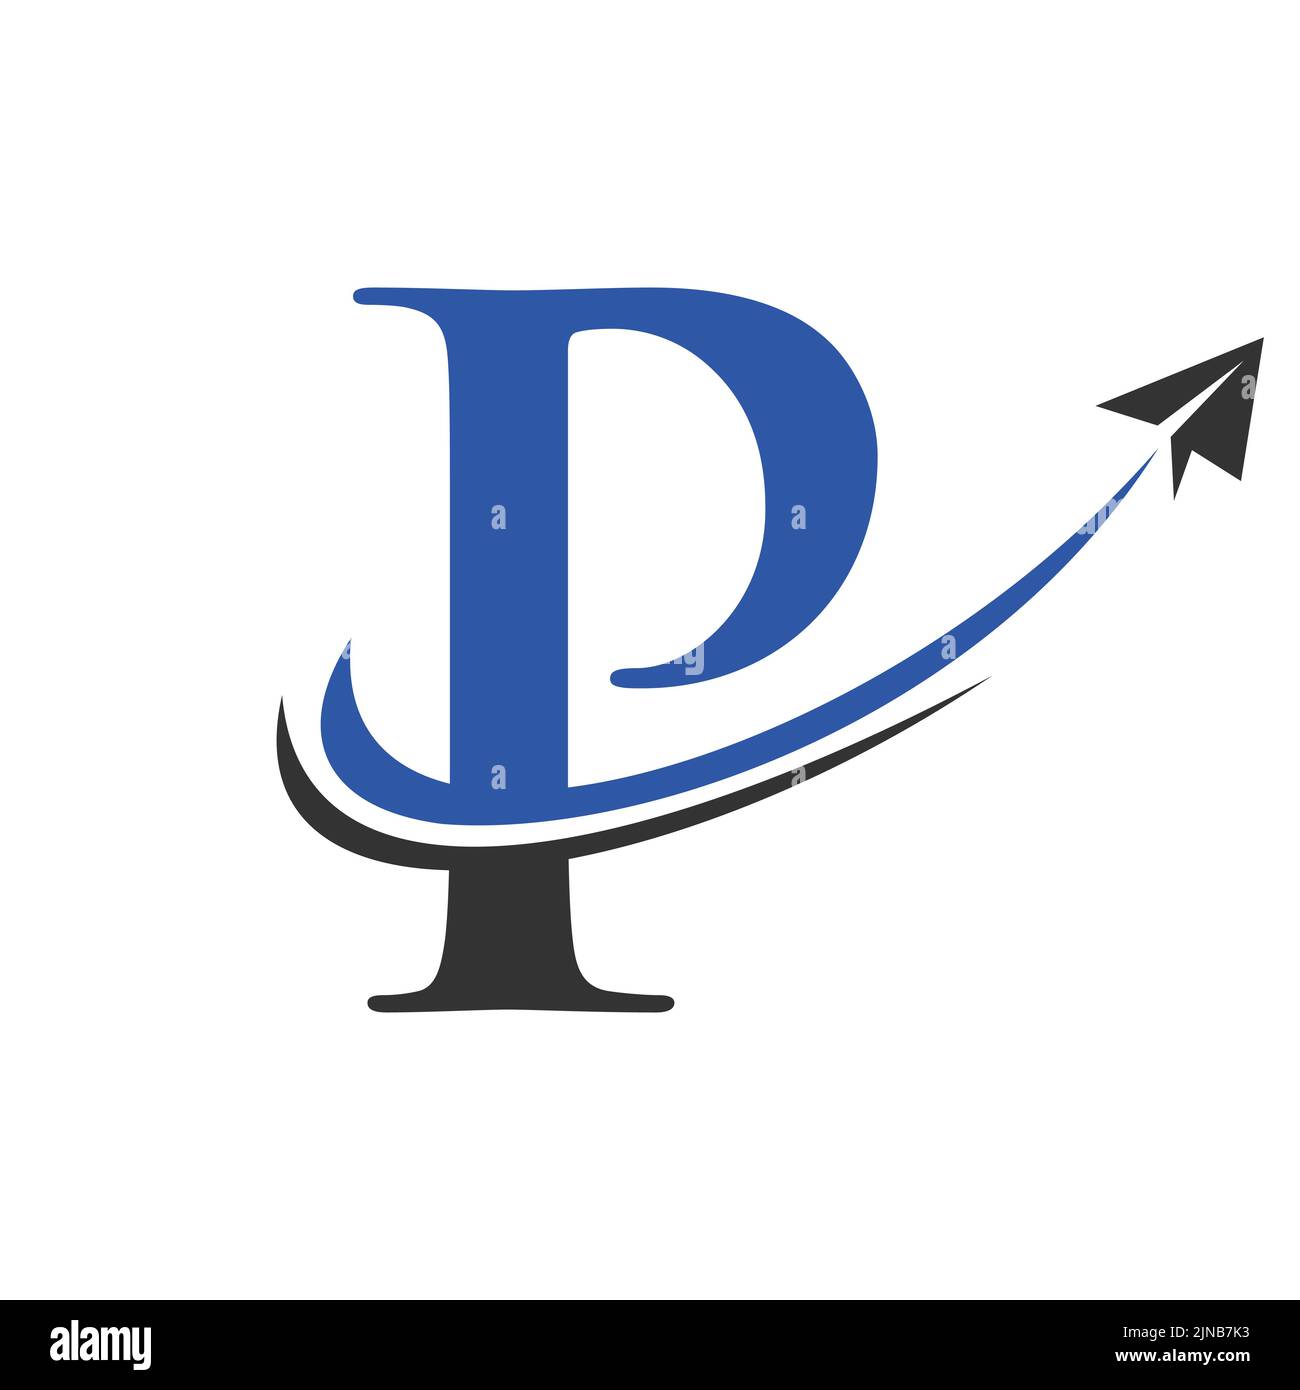 Travel Logo On Letter P Vector Template. Letter P Air Travel Logo Design Stock Vector